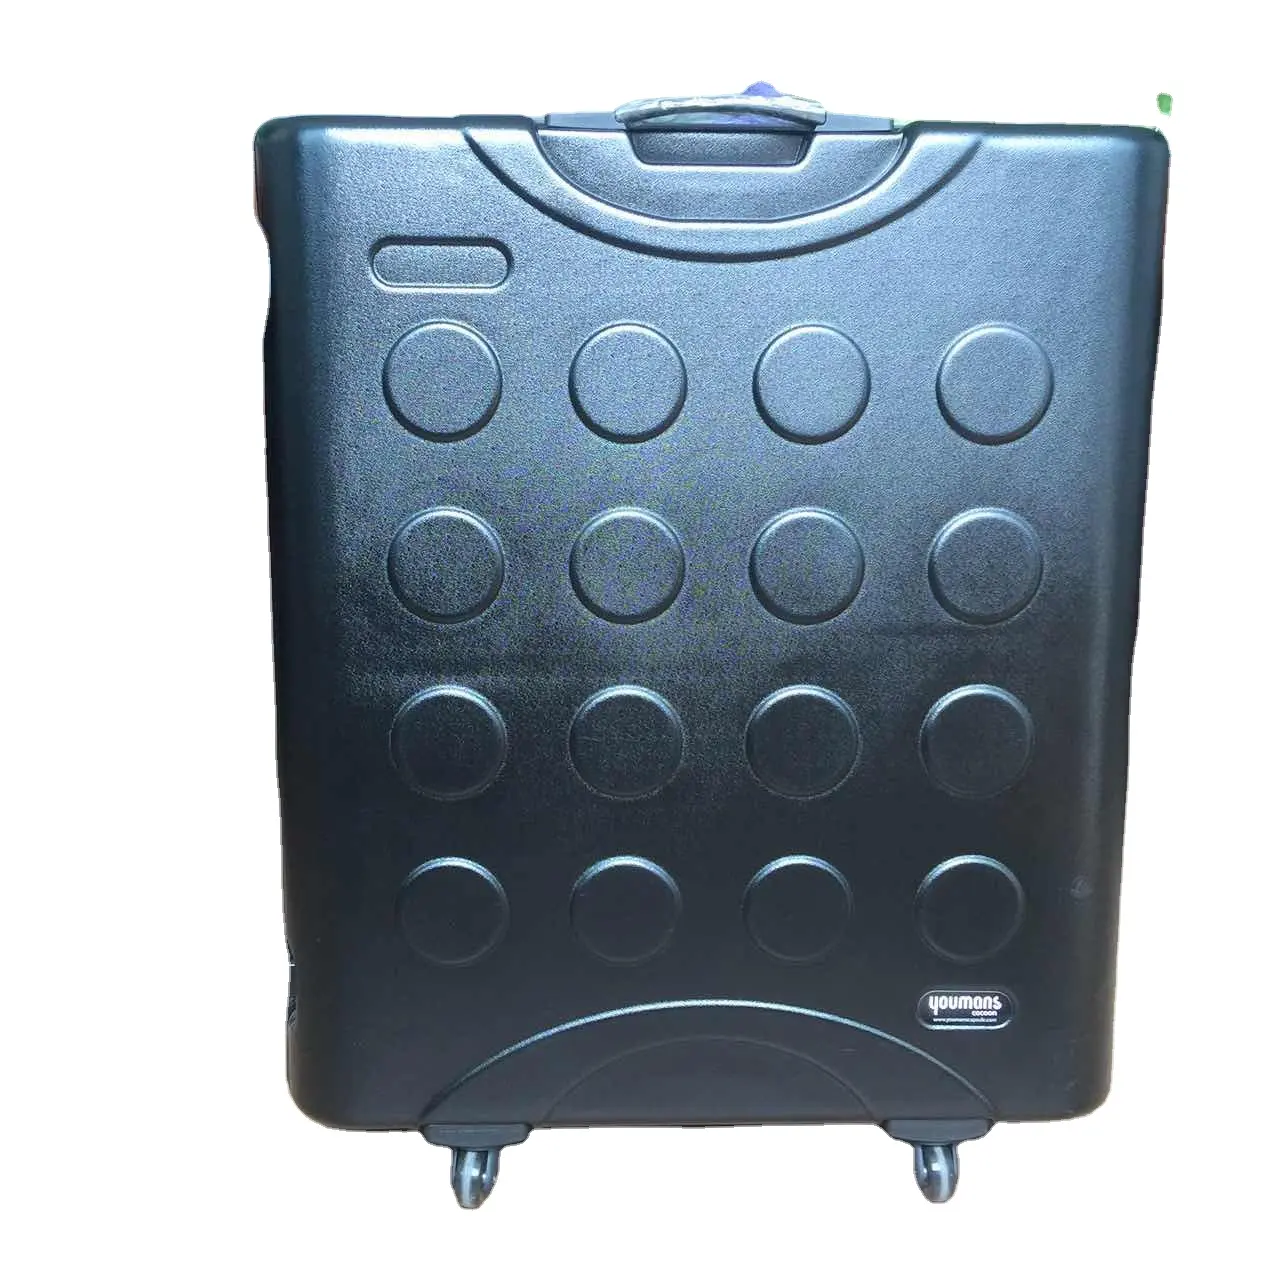 Özel kabine elektronik konut Vriginal malzeme siyah kutu ABS PC sert çanta vakum şekillendirme için